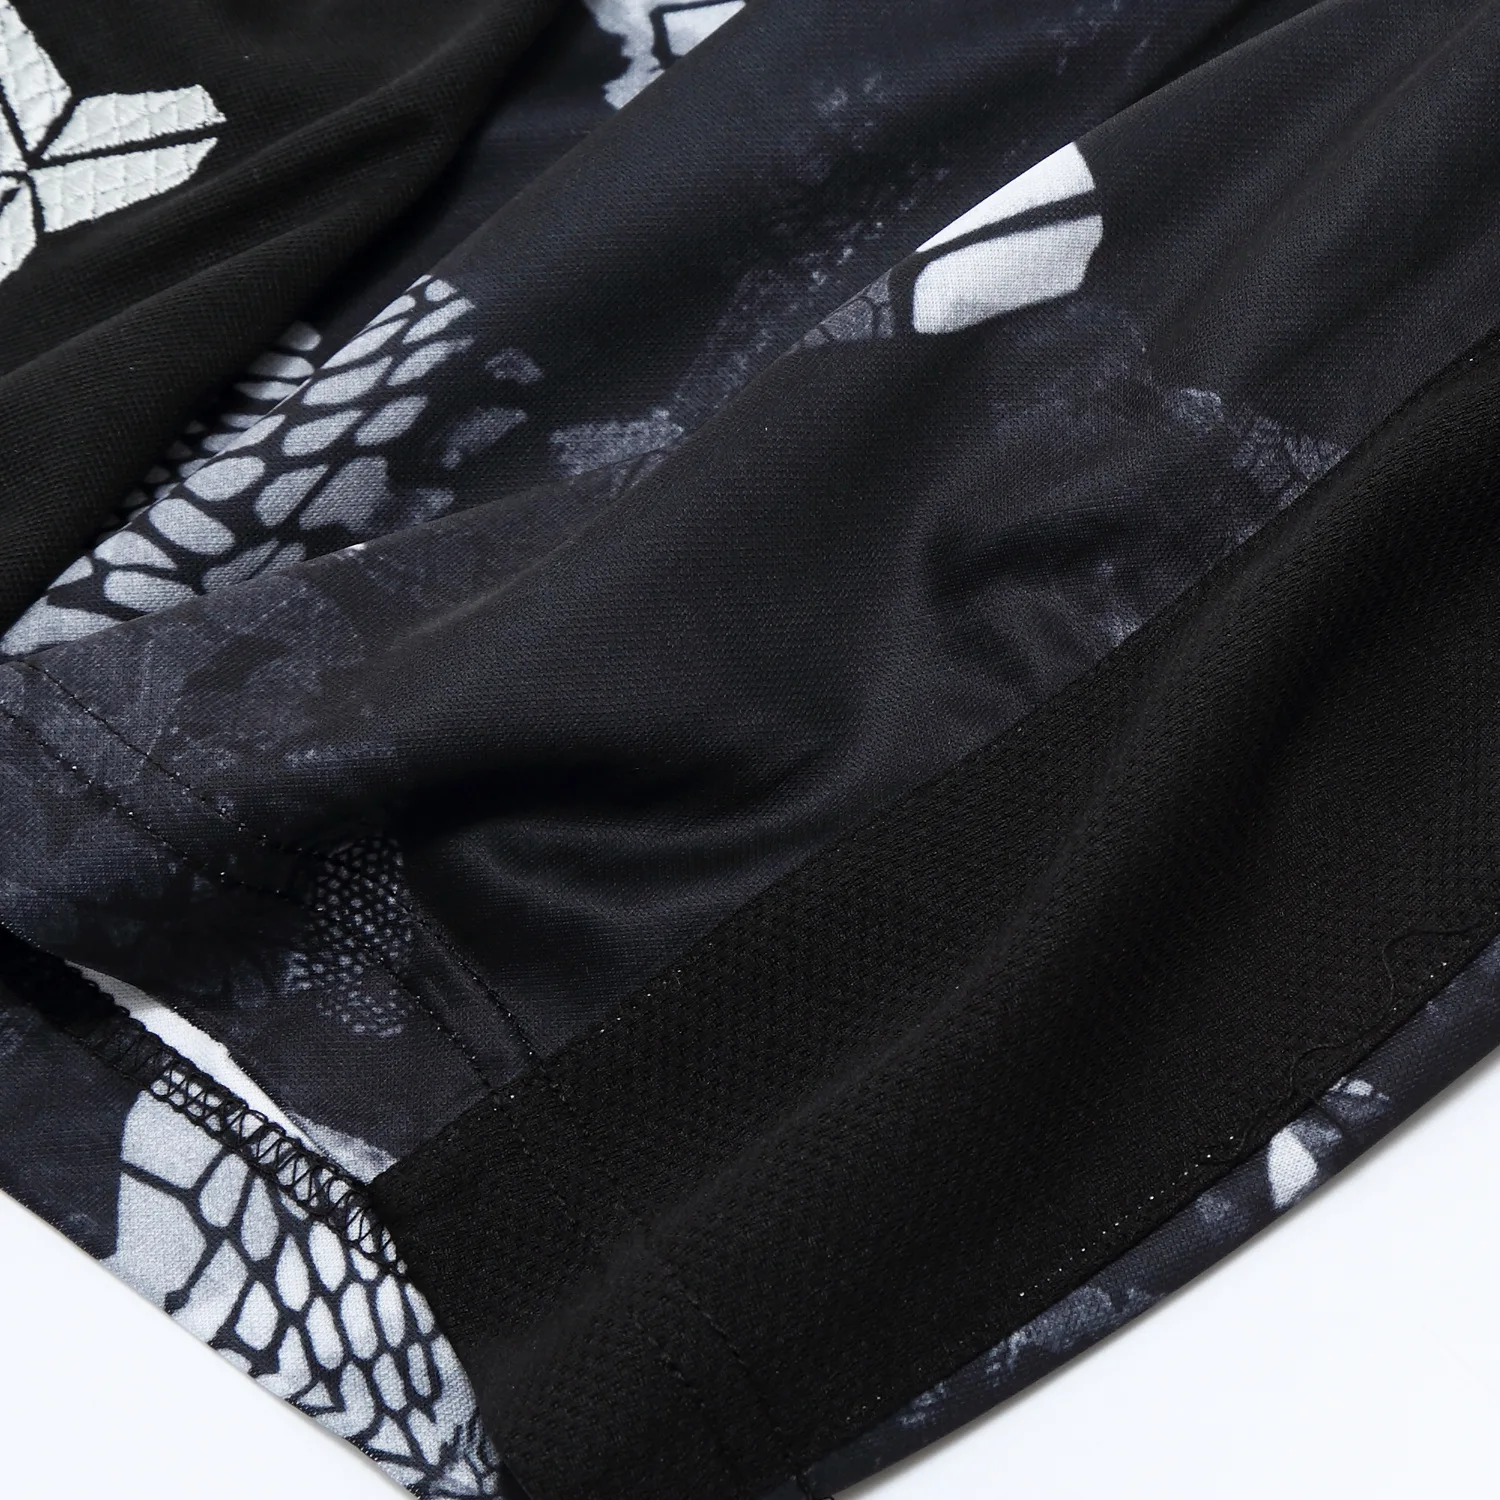 SYNSLOVE дизайн черная сторона тренировочный баскетбольный мяч kobe bryant живопись спортивные шорты свободные половина длины плюс размер с двойным карманом